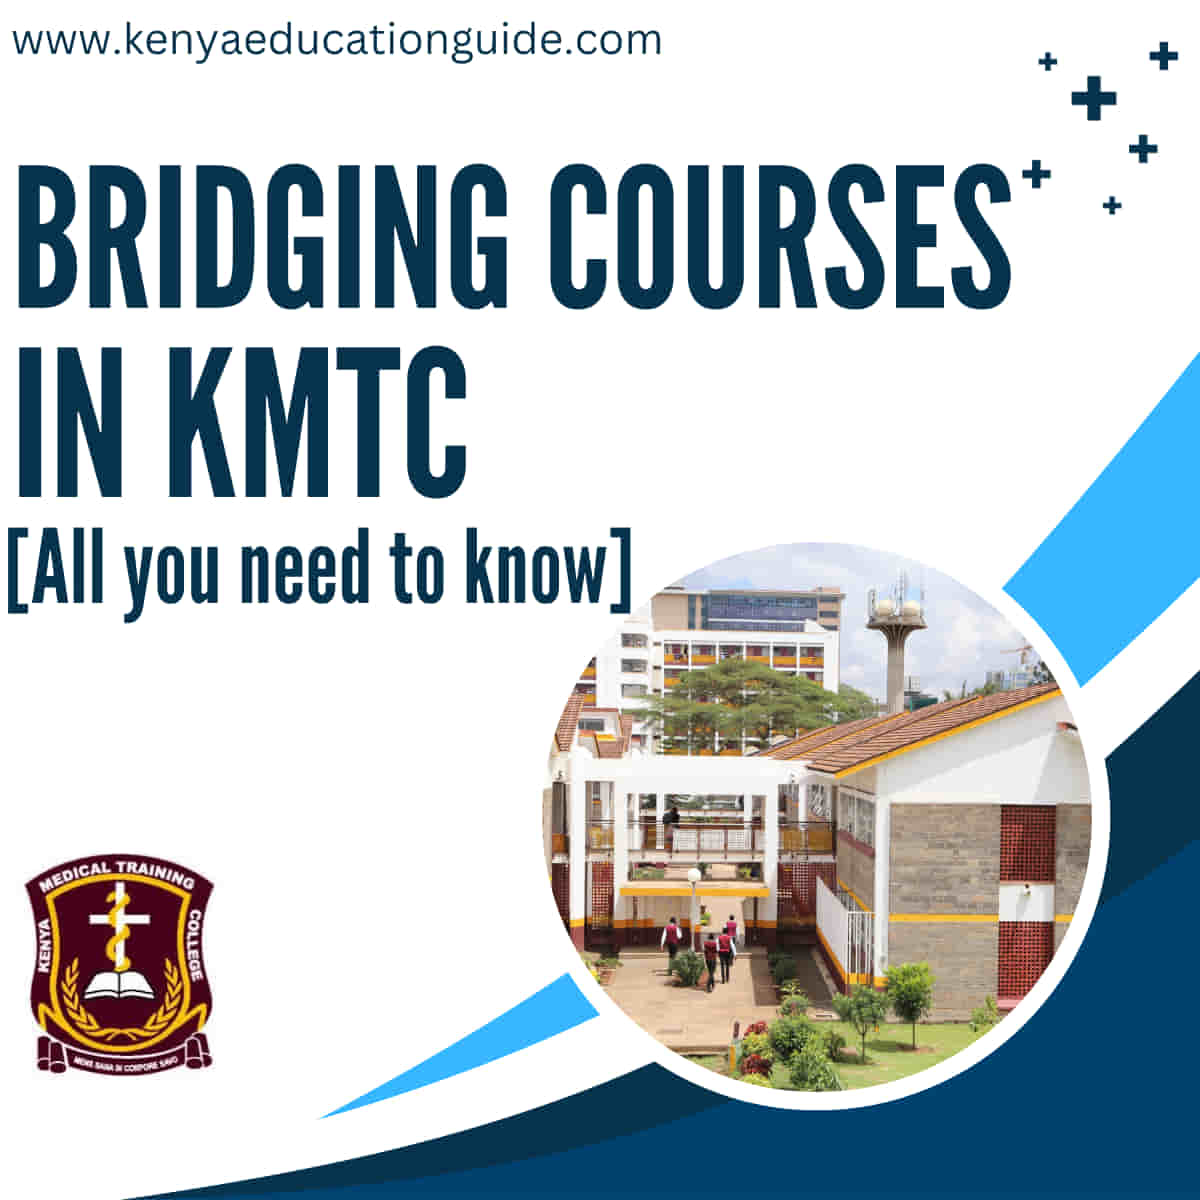 Bridging Courses in KMTC